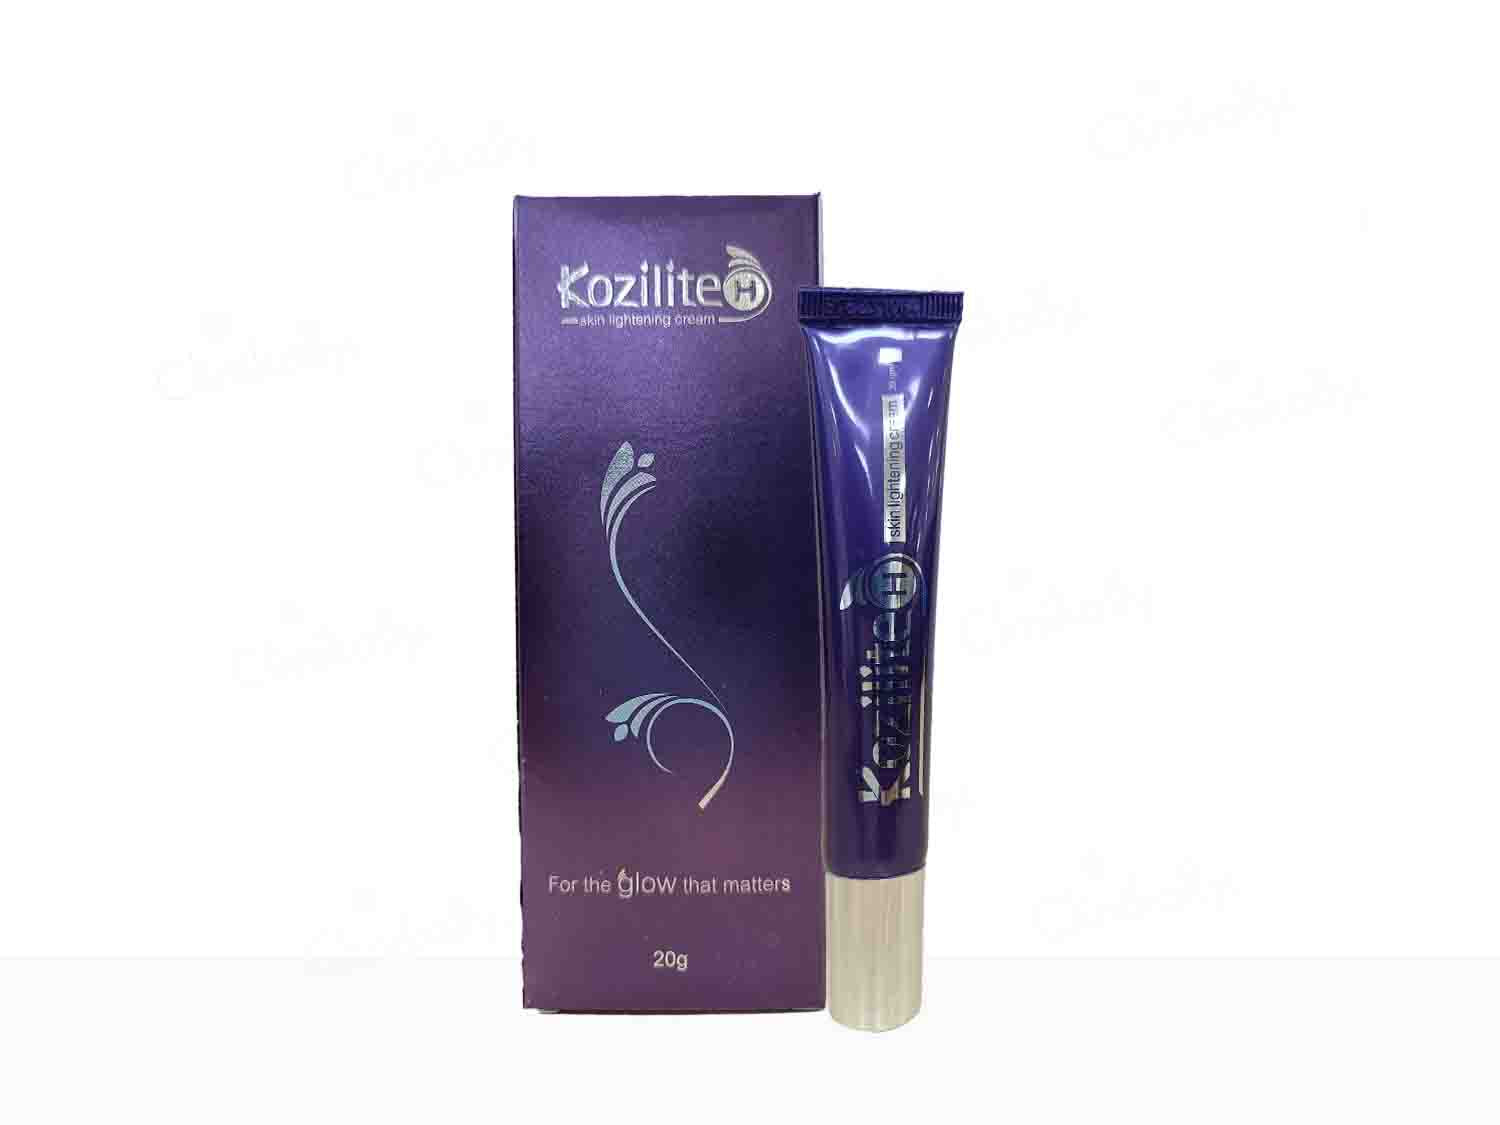 Kozilite-H Skin Lightening Cream